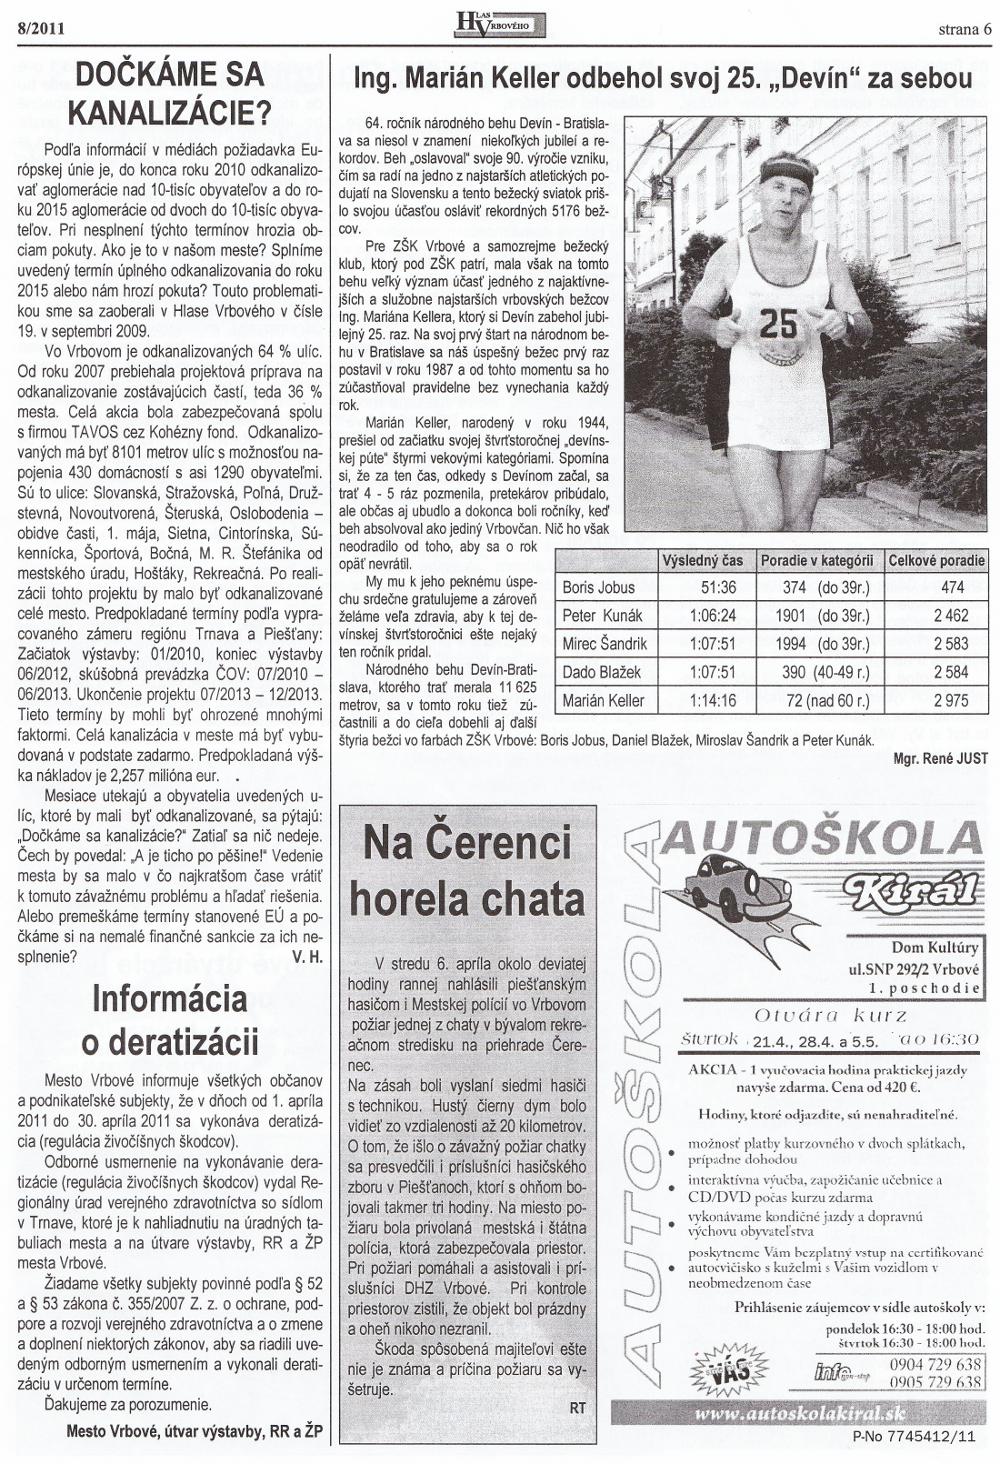 Hlas Vrbového 08/2011, strana 6